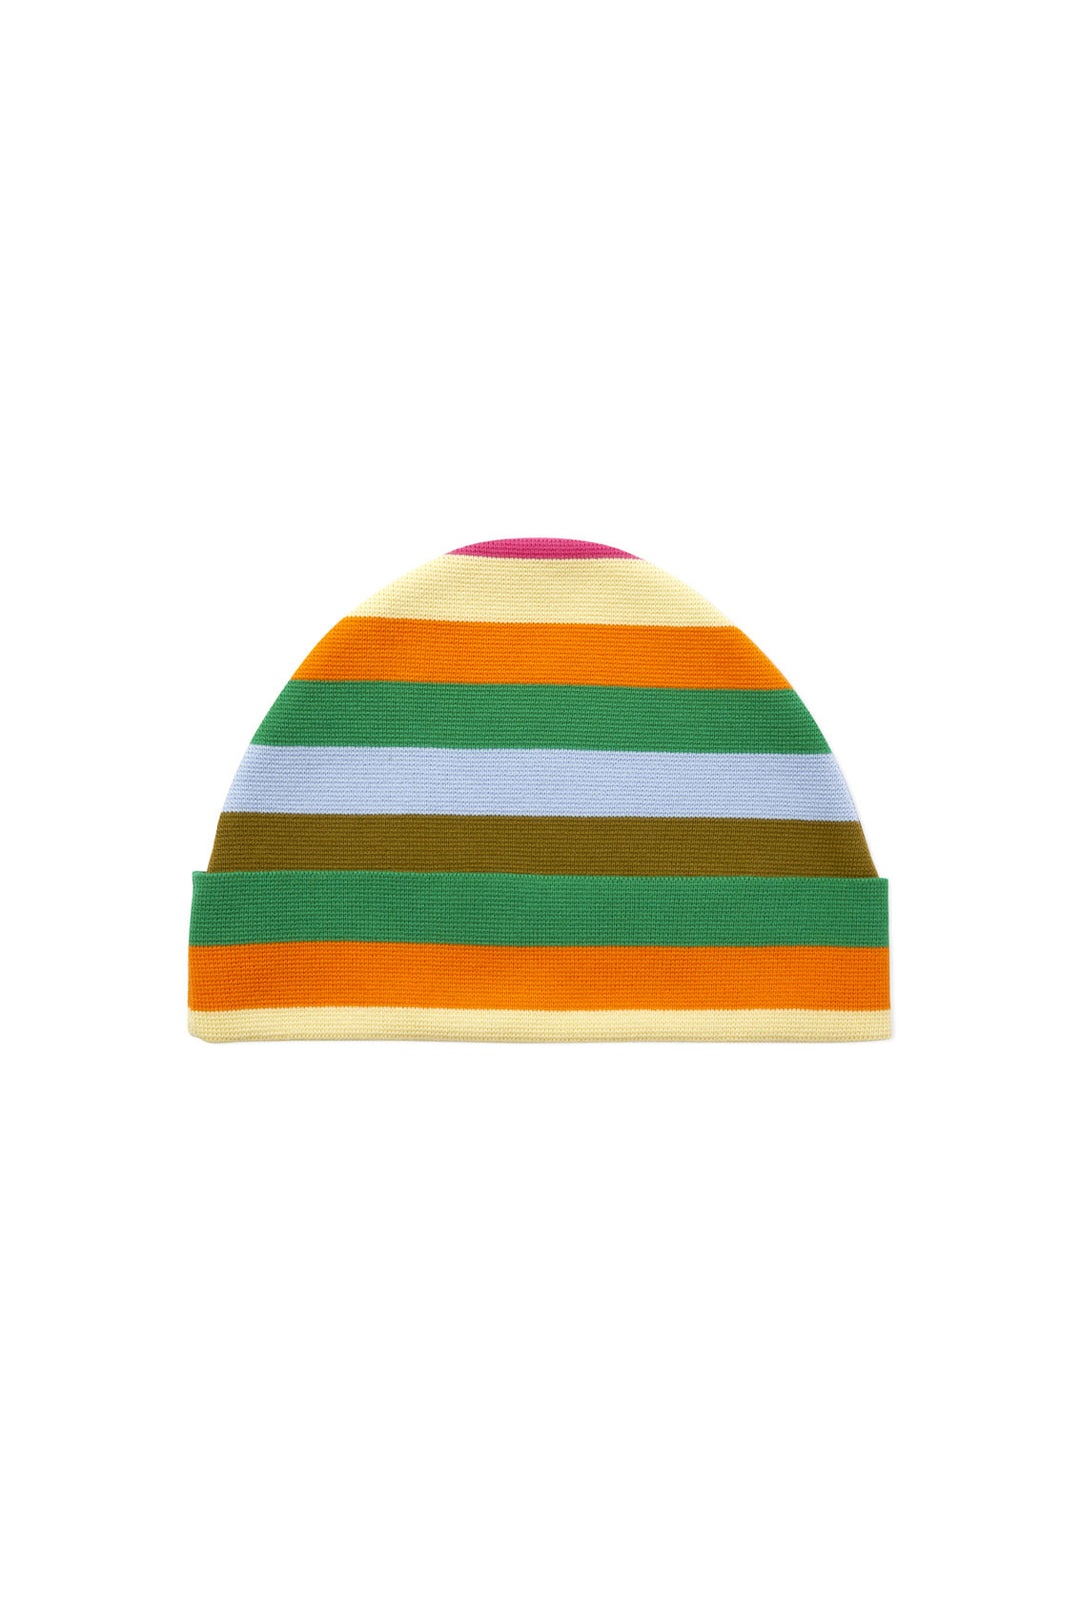 KNIT HAT / multicolor stripes - 1